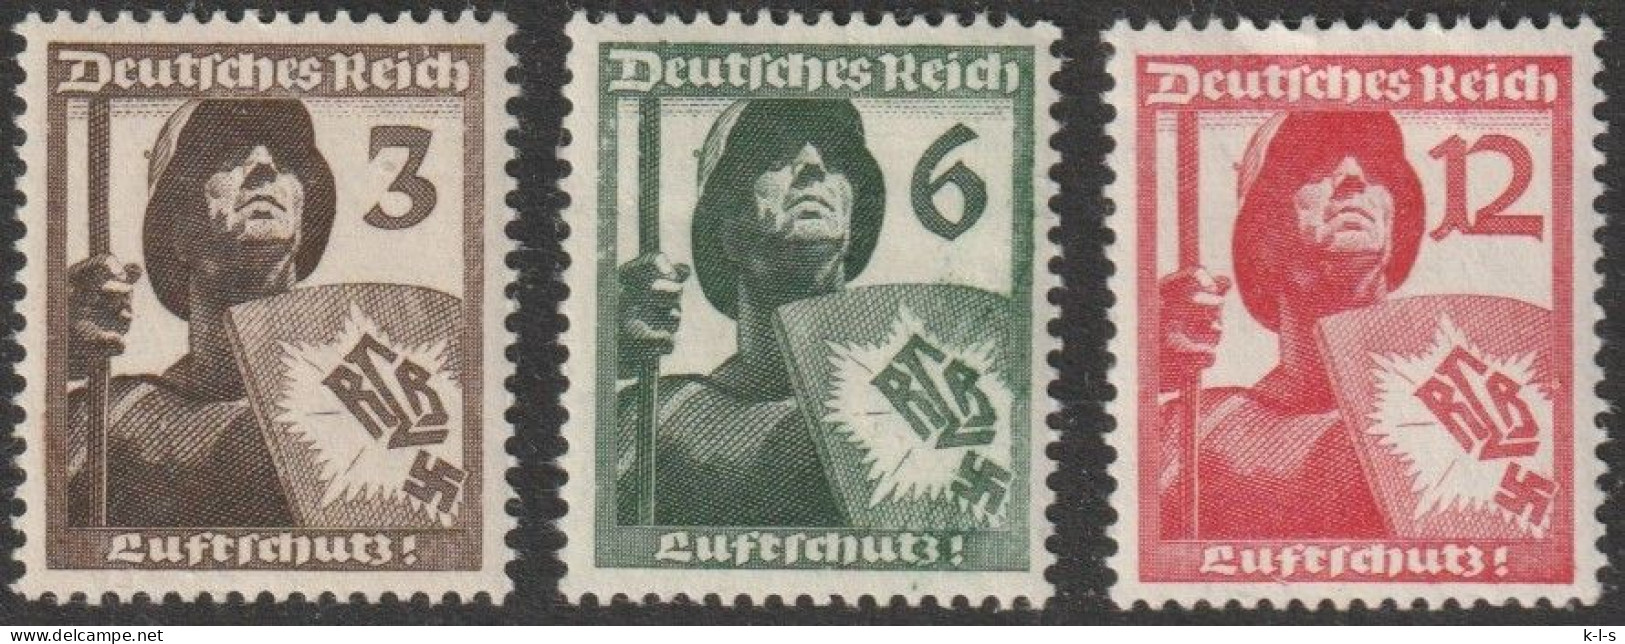 Deut. Reich: 1937, Mi. Nr. 643-45, Luftschutz.  **/MNH - Nuevos